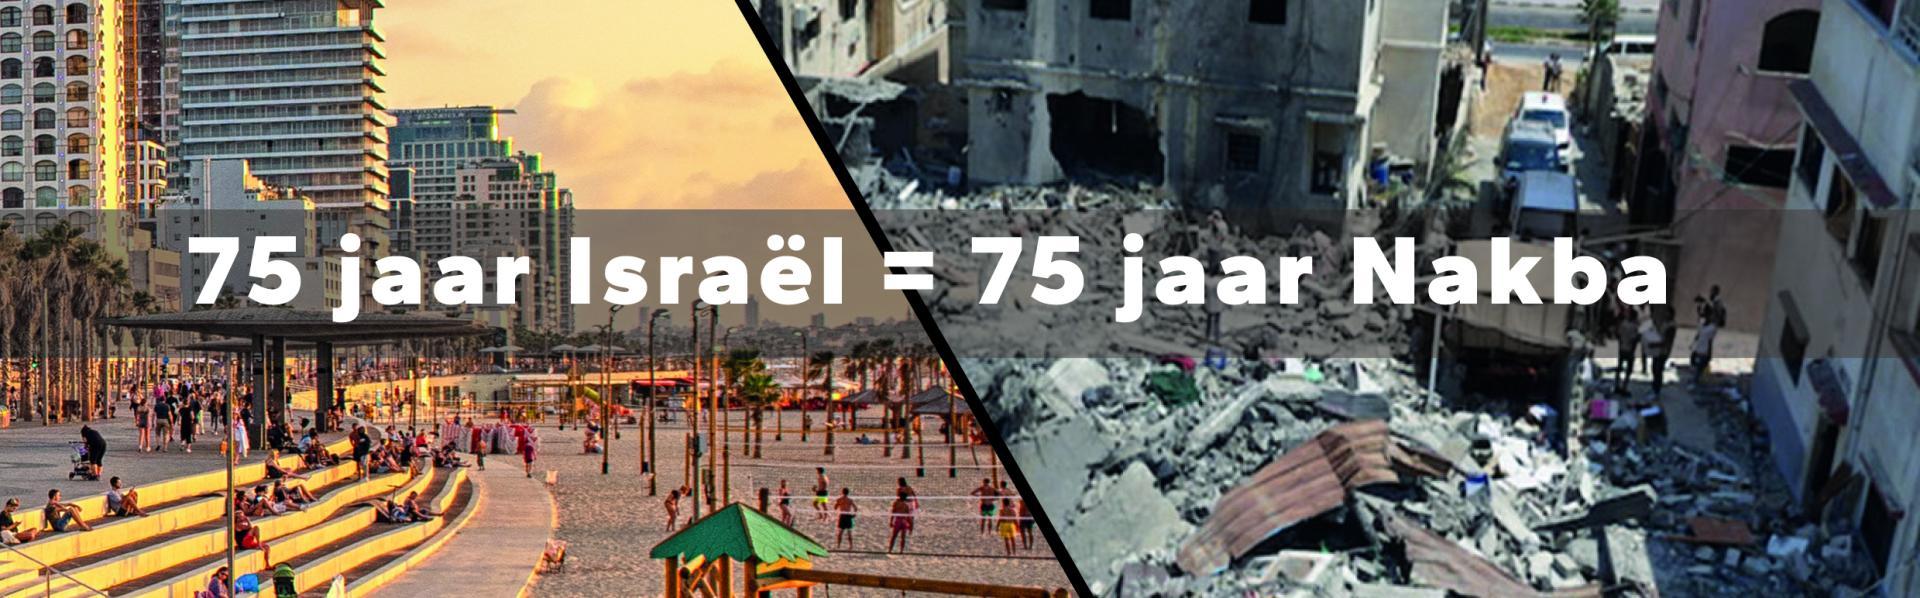 75 jaar Israël = 75 jaar Nakba